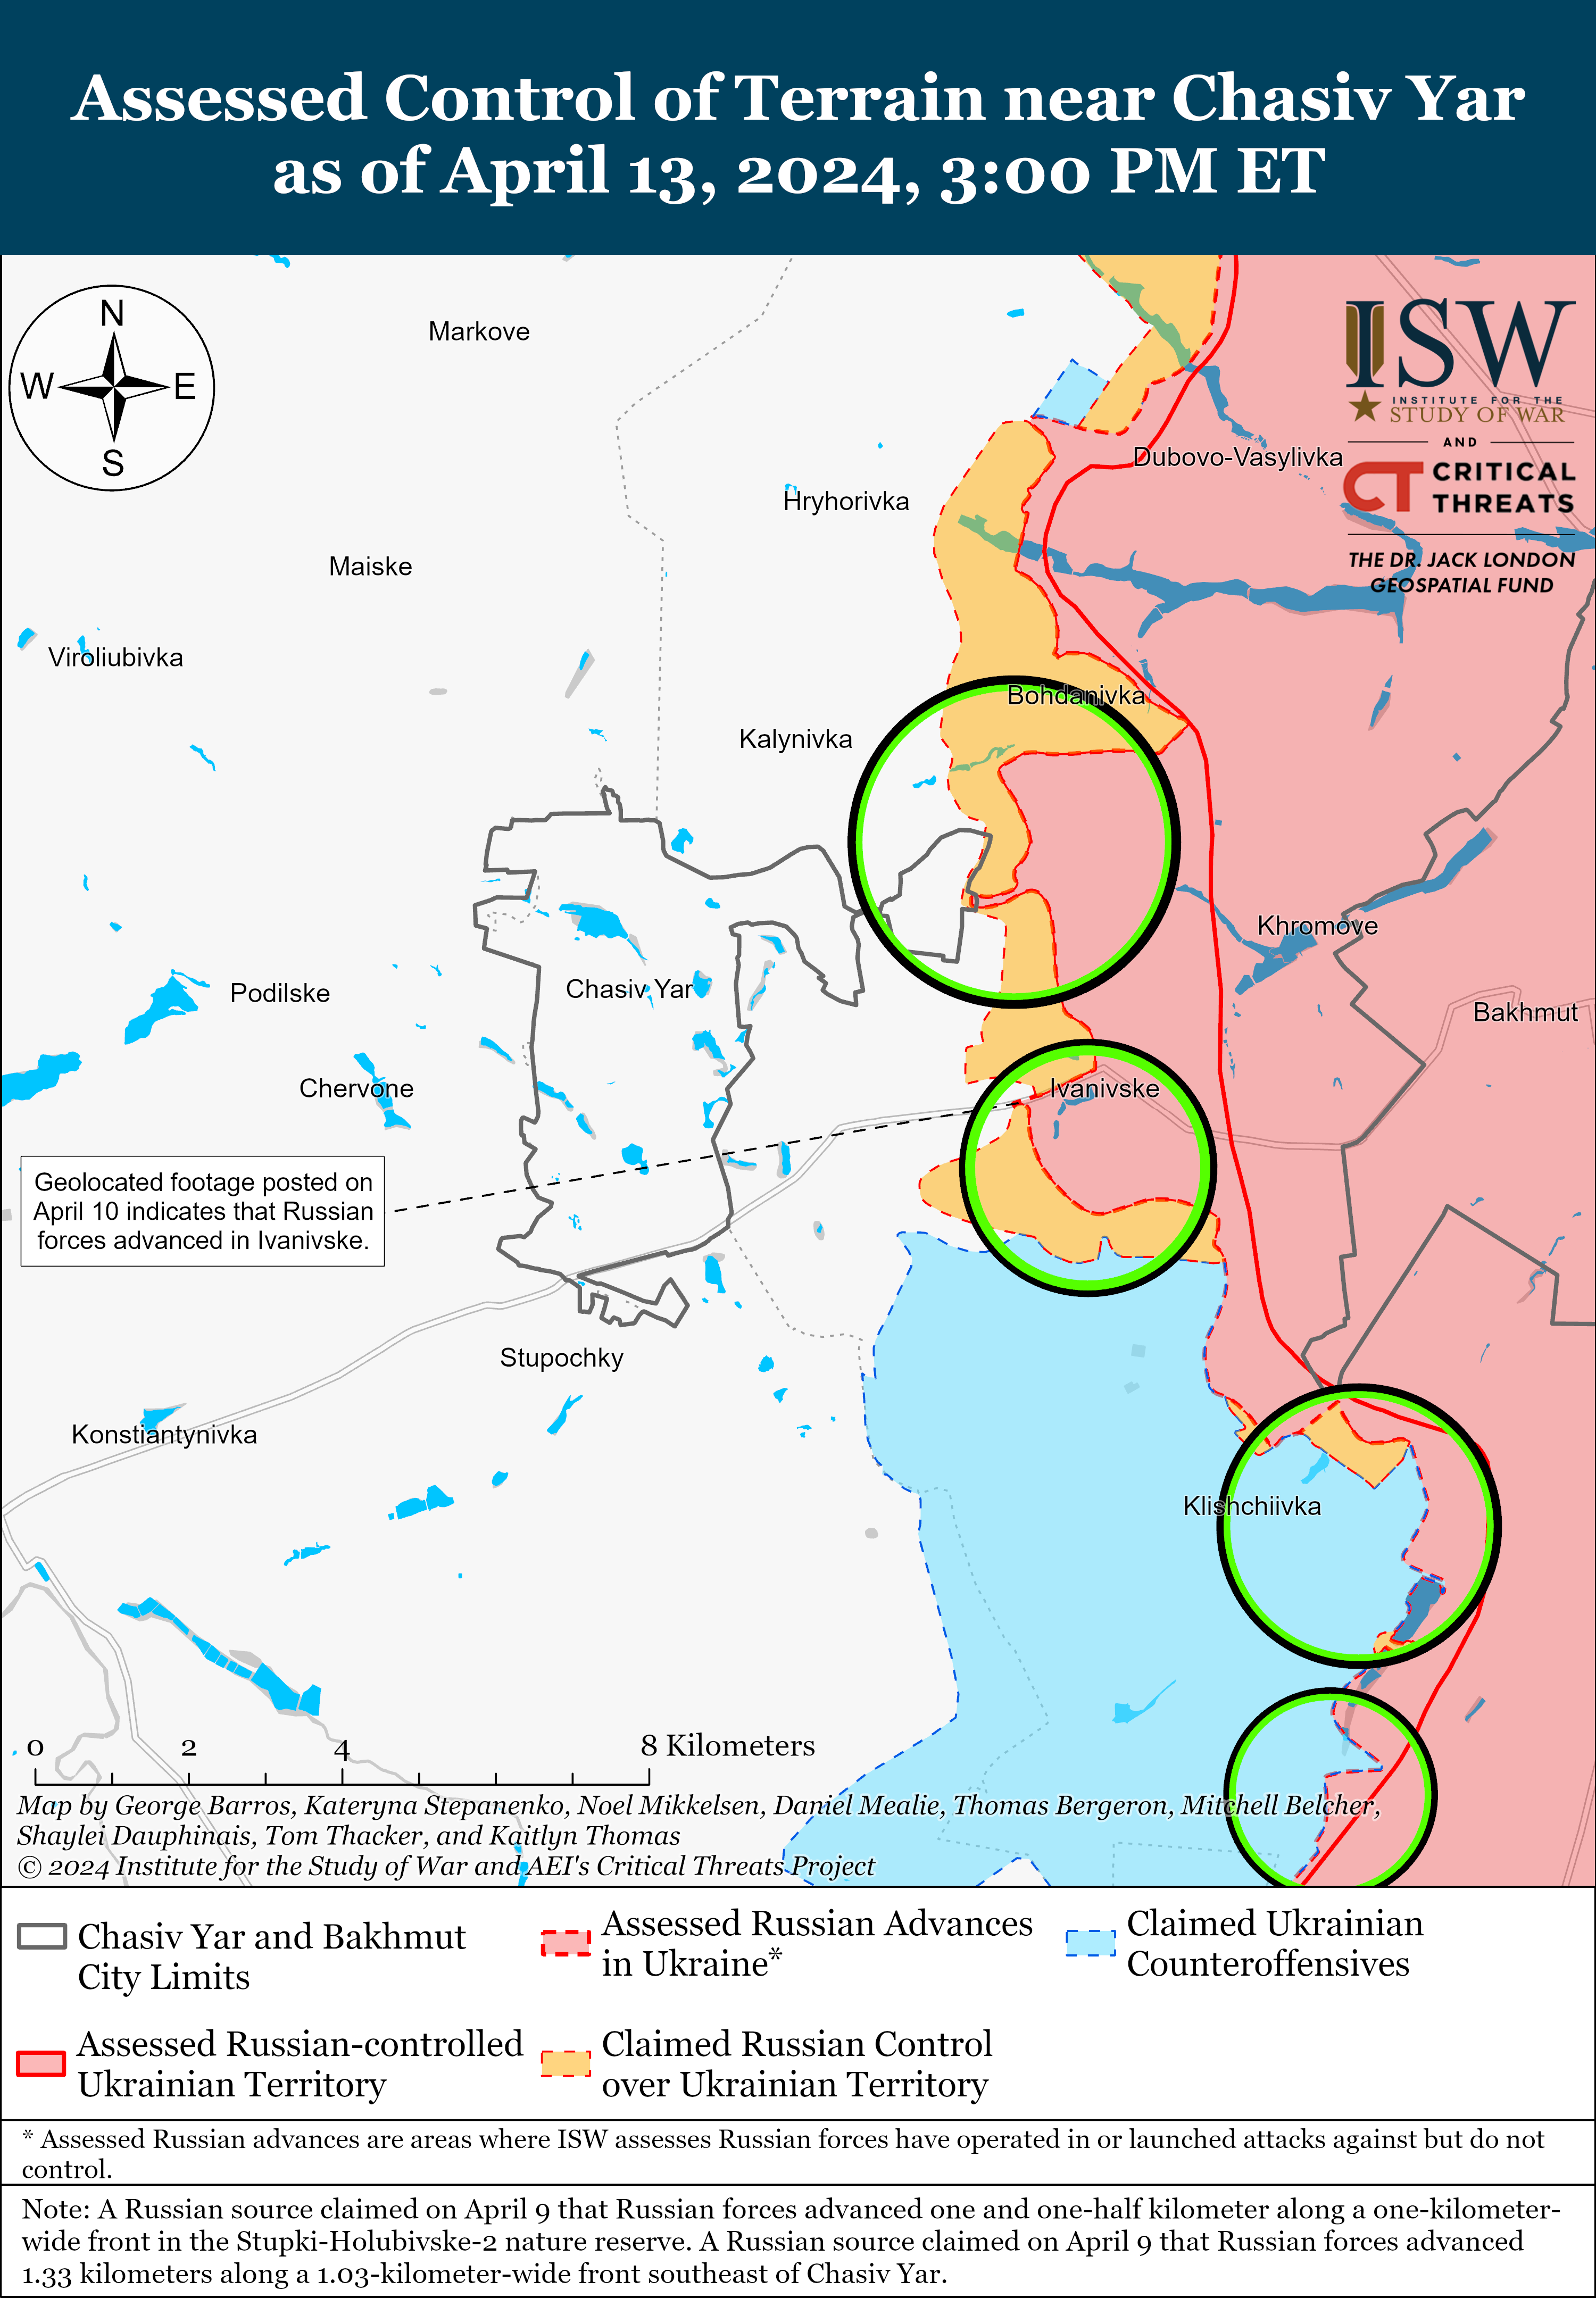 Позиционные бои идут на большинстве направлений, враг продвинулся под Часовым Яром: карты ISW